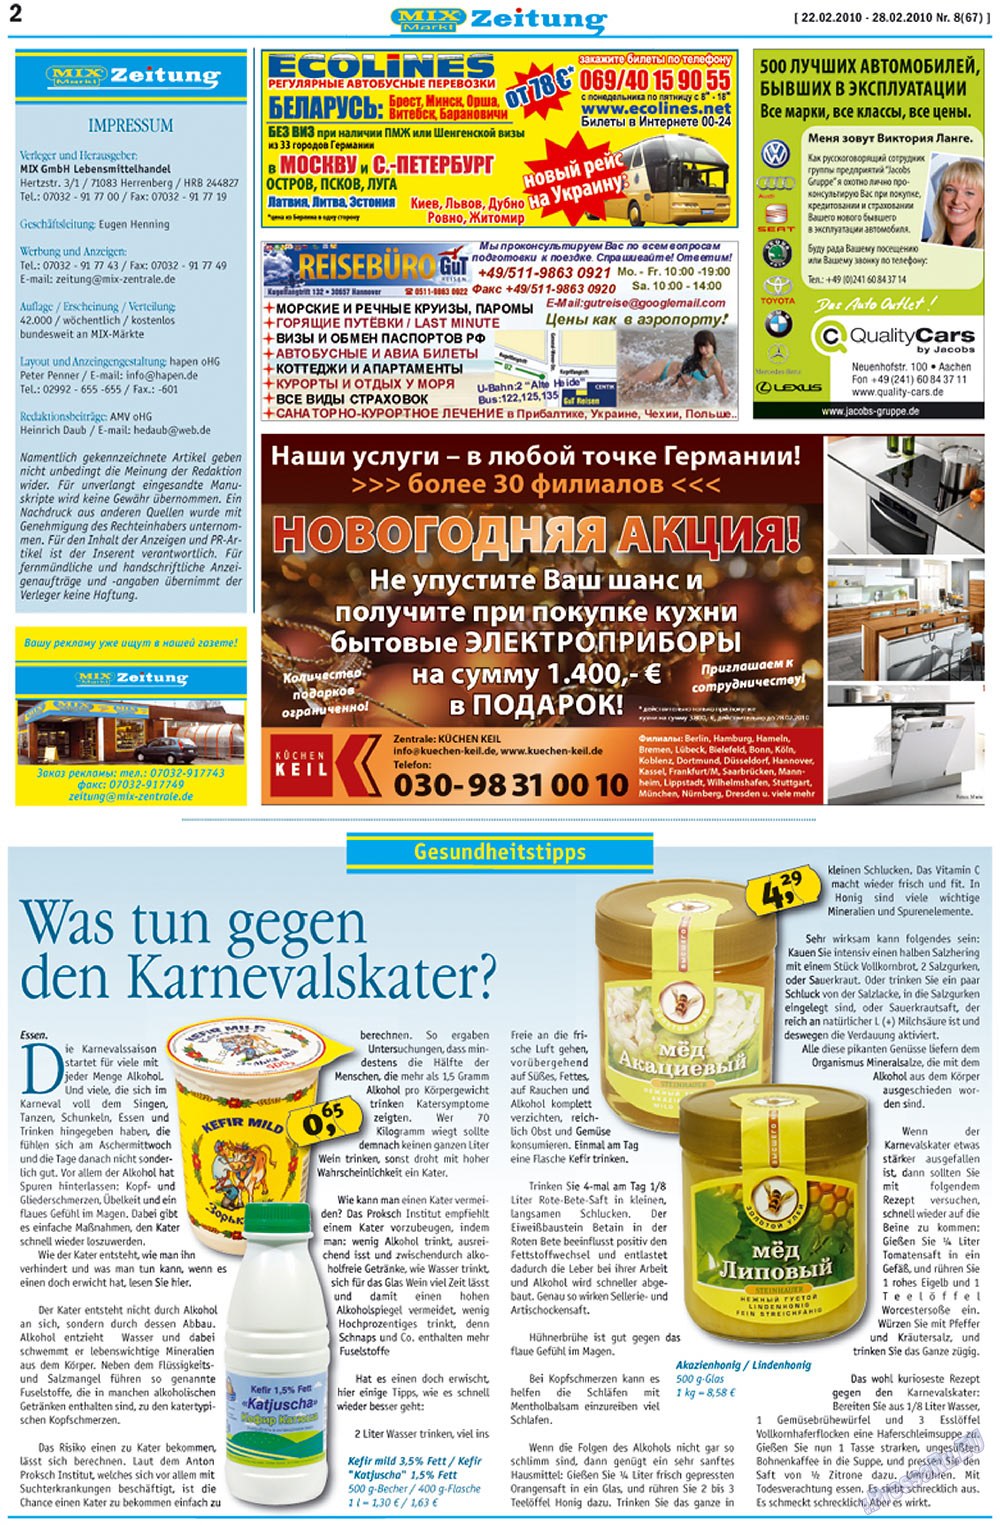 MIX-Markt Zeitung (газета). 2010 год, номер 8, стр. 2